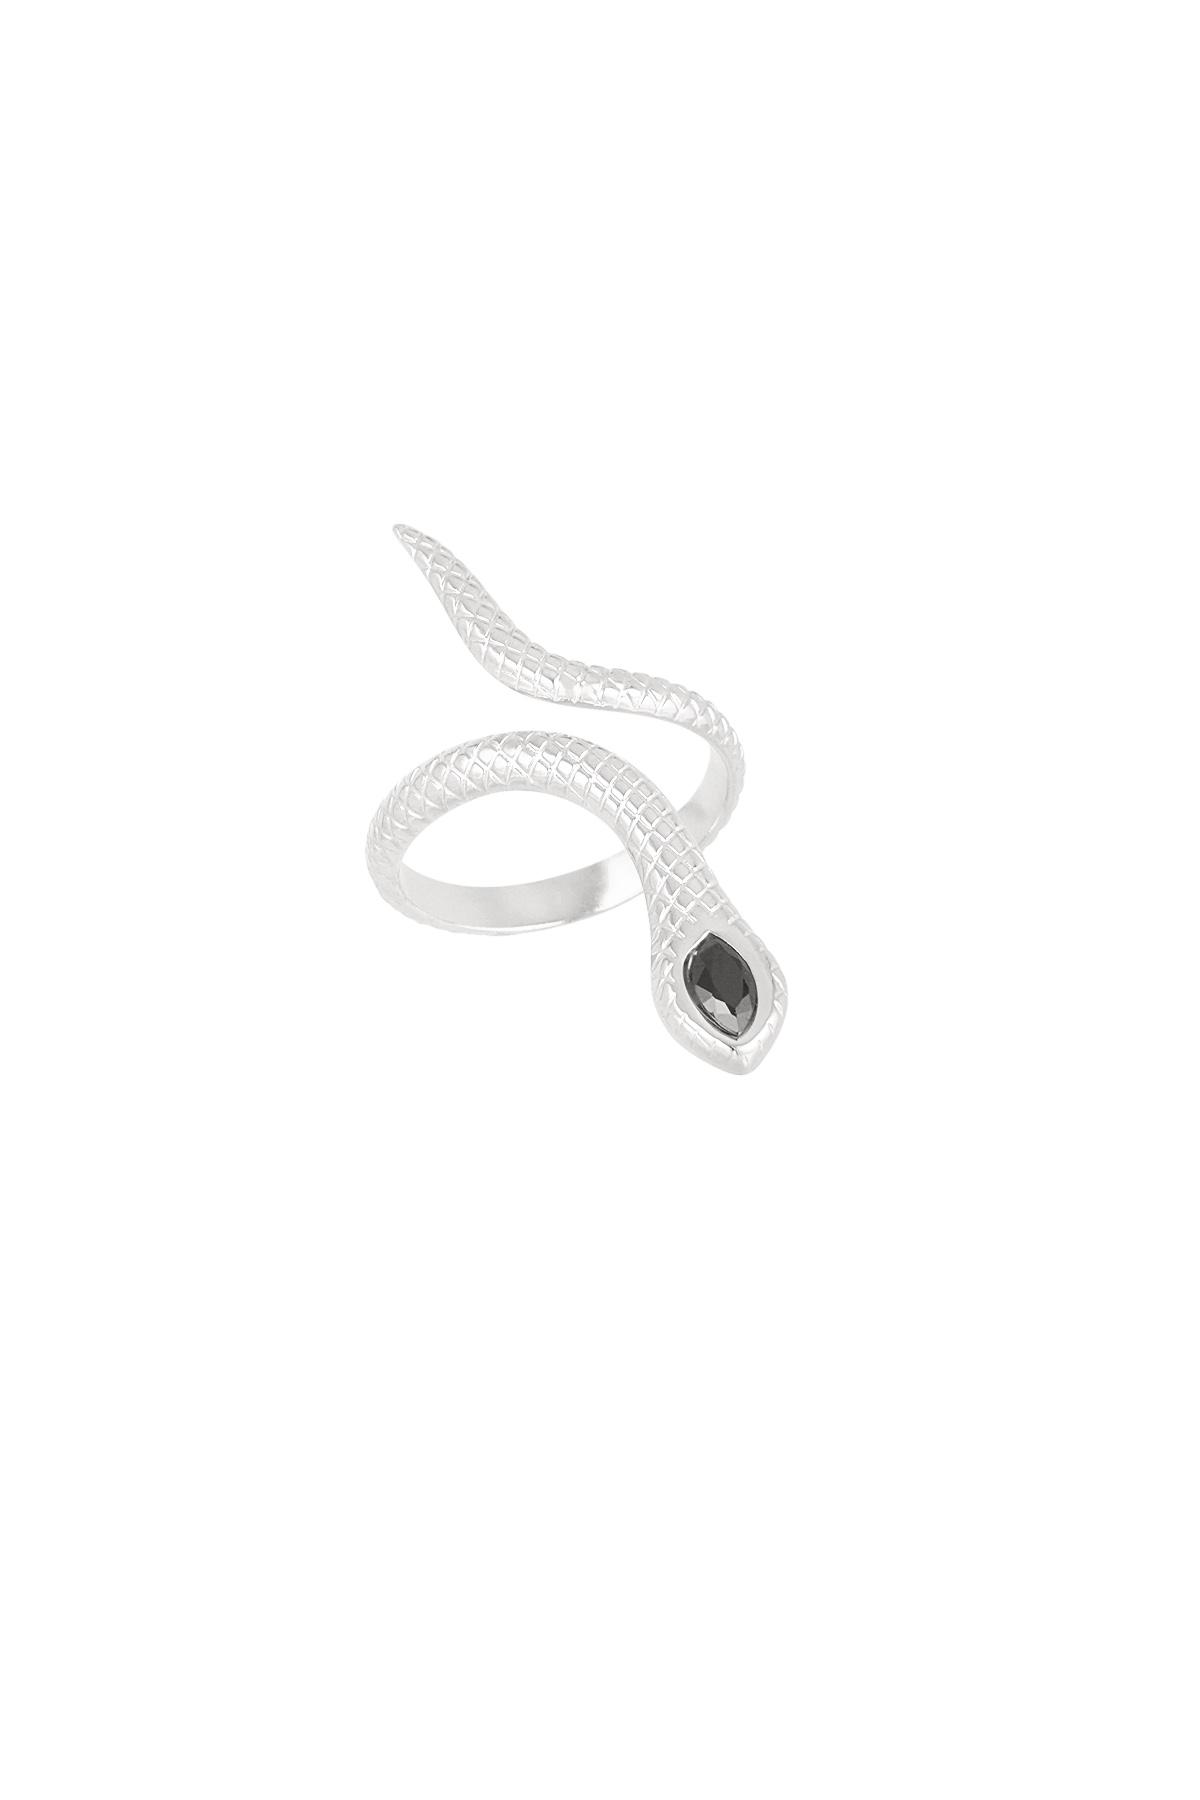 Zwarte slang ring - zilver  Afbeelding5